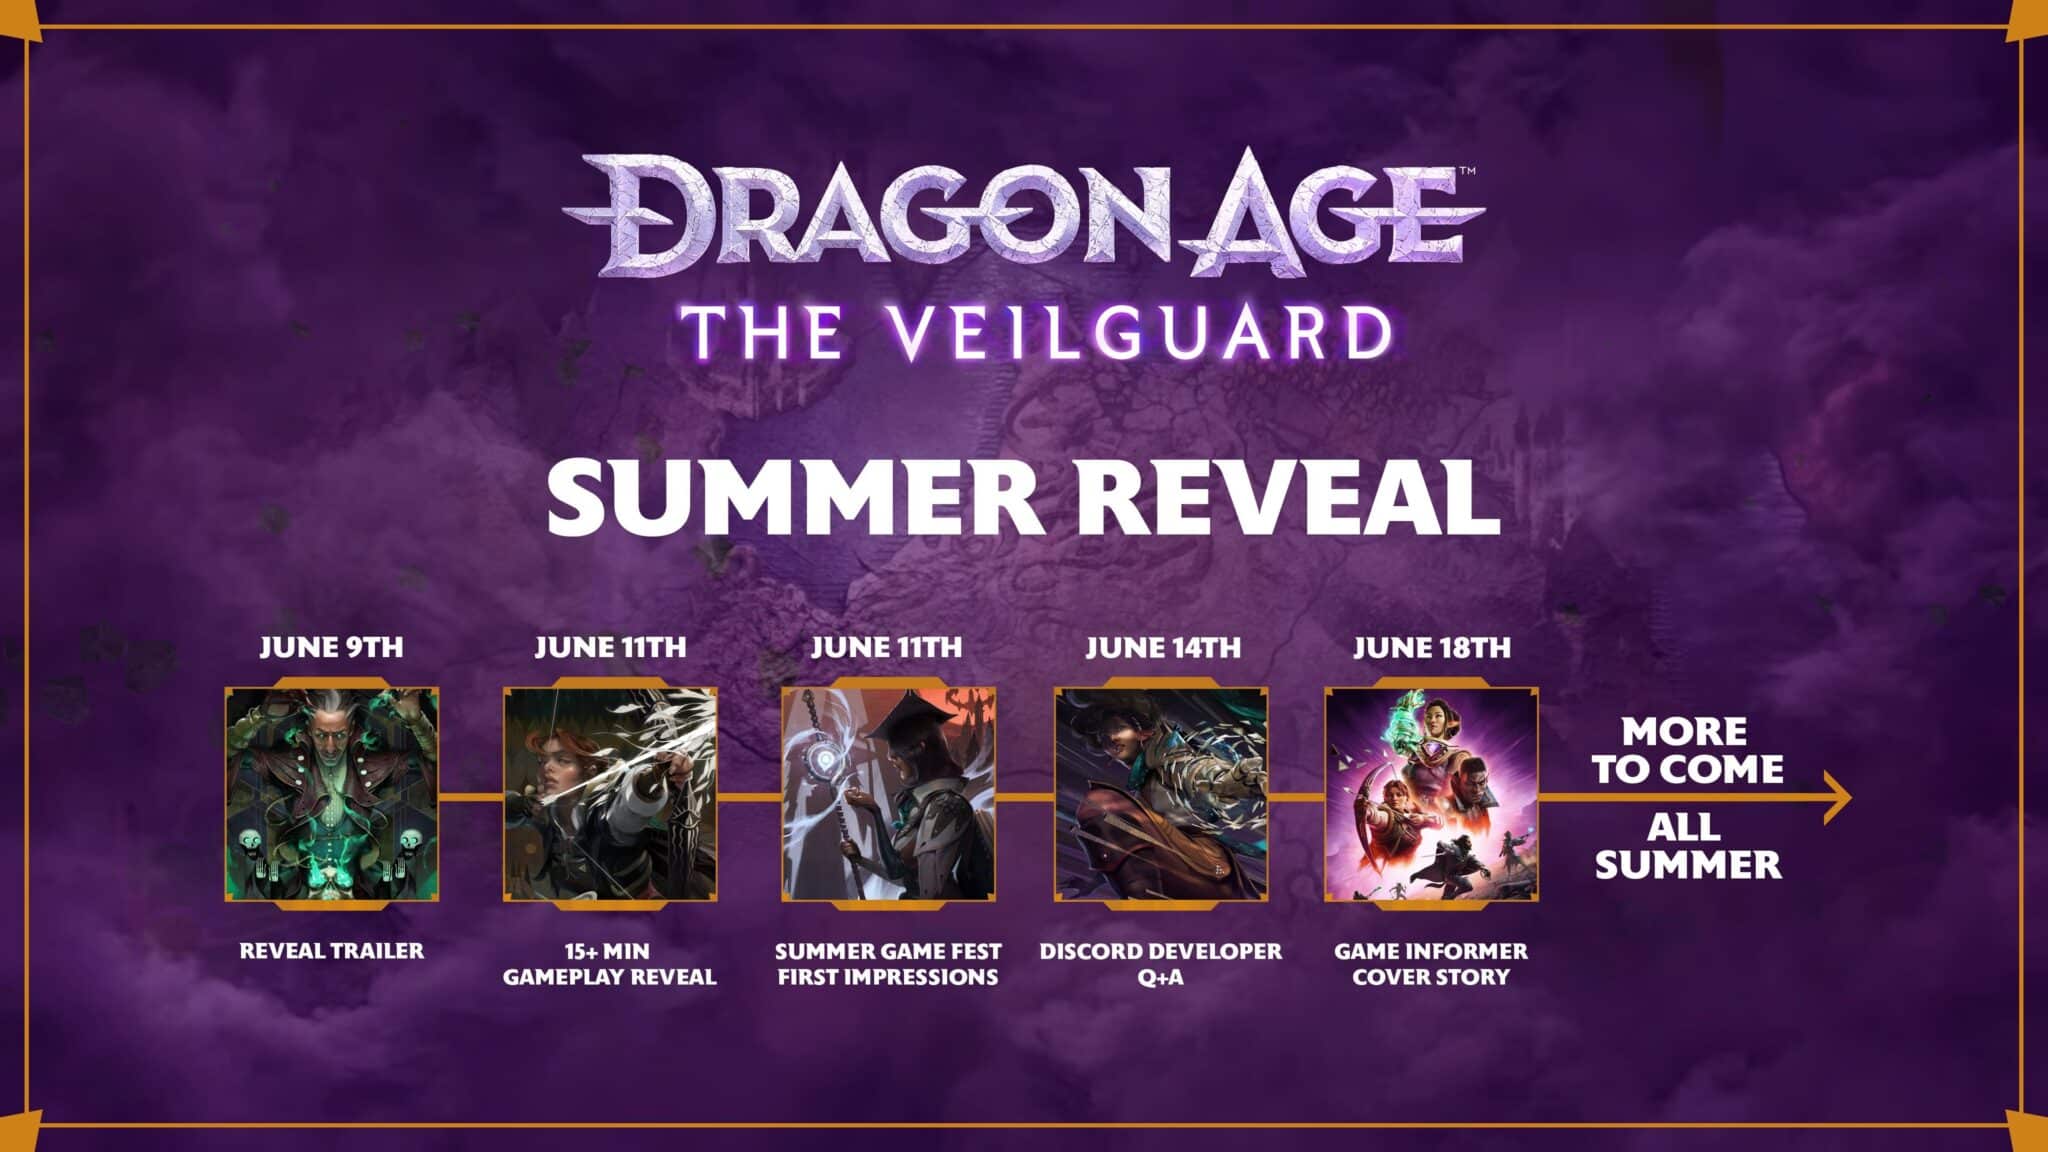 (Apparemment, vous pouvez encore vous réjouir de nombreuses nouvelles informations sur Dragon Age : The Veilguard dans les jours à venir.)